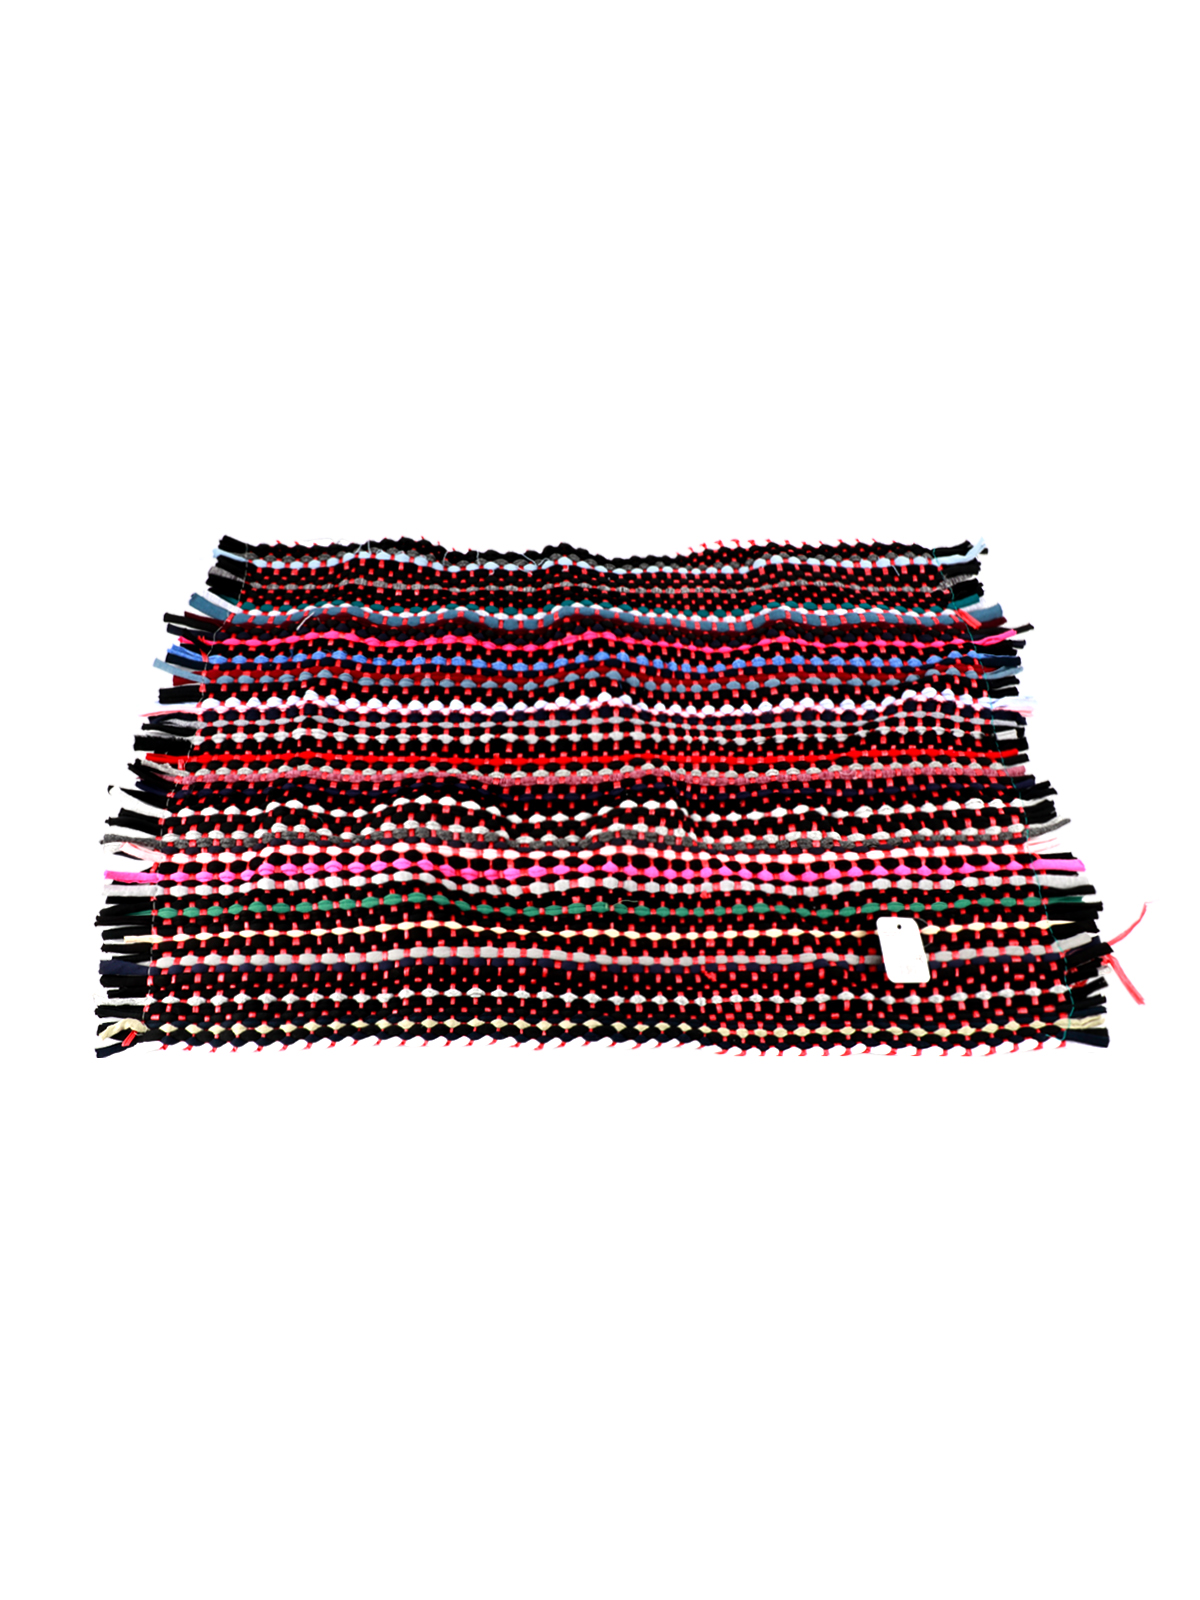 Коврик плетеный, 38х56 см, разноцветный